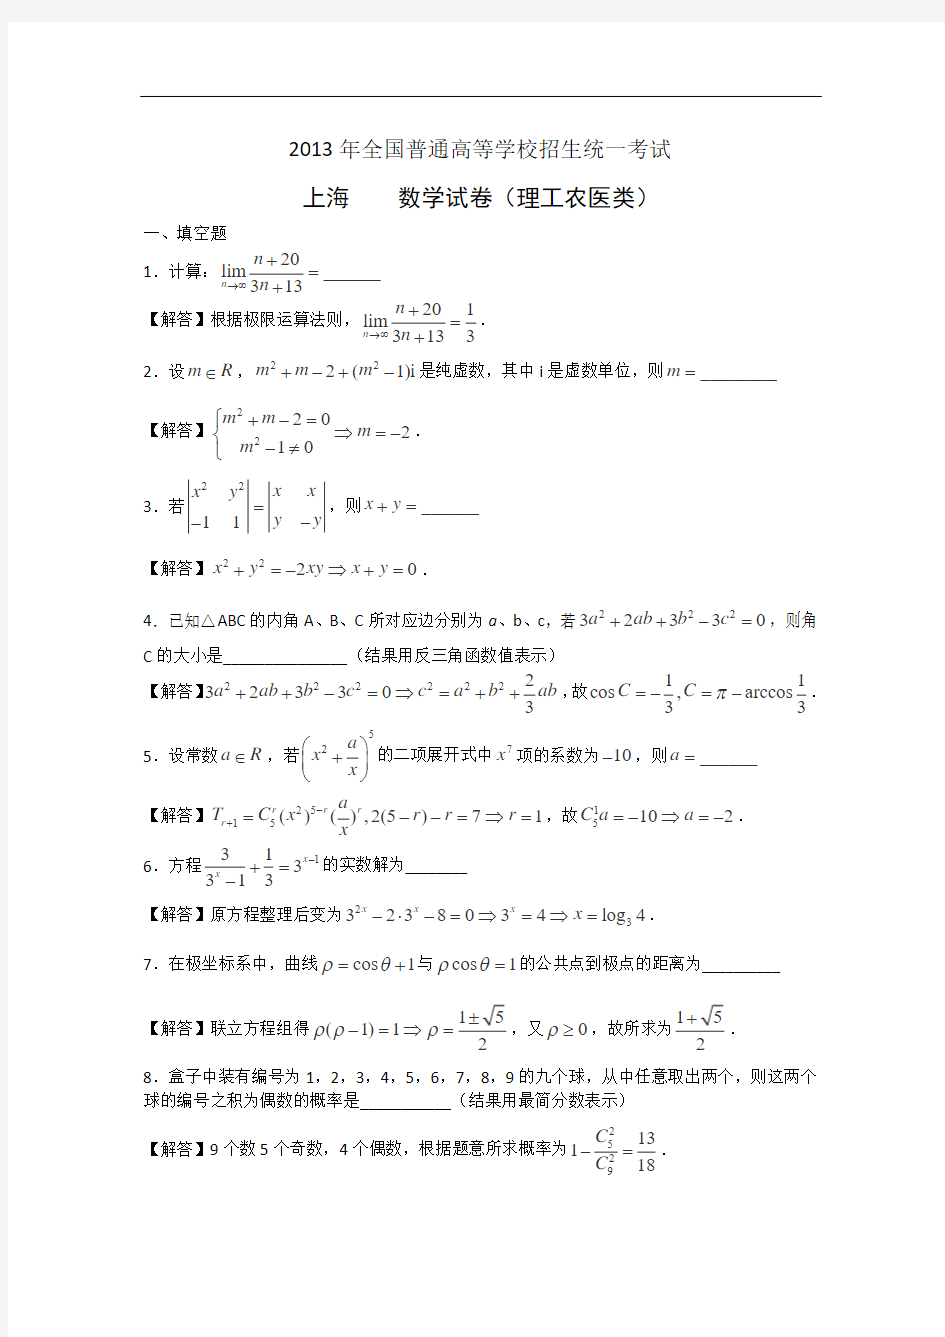 2013年高考真题——理科数学(上海卷)解析版